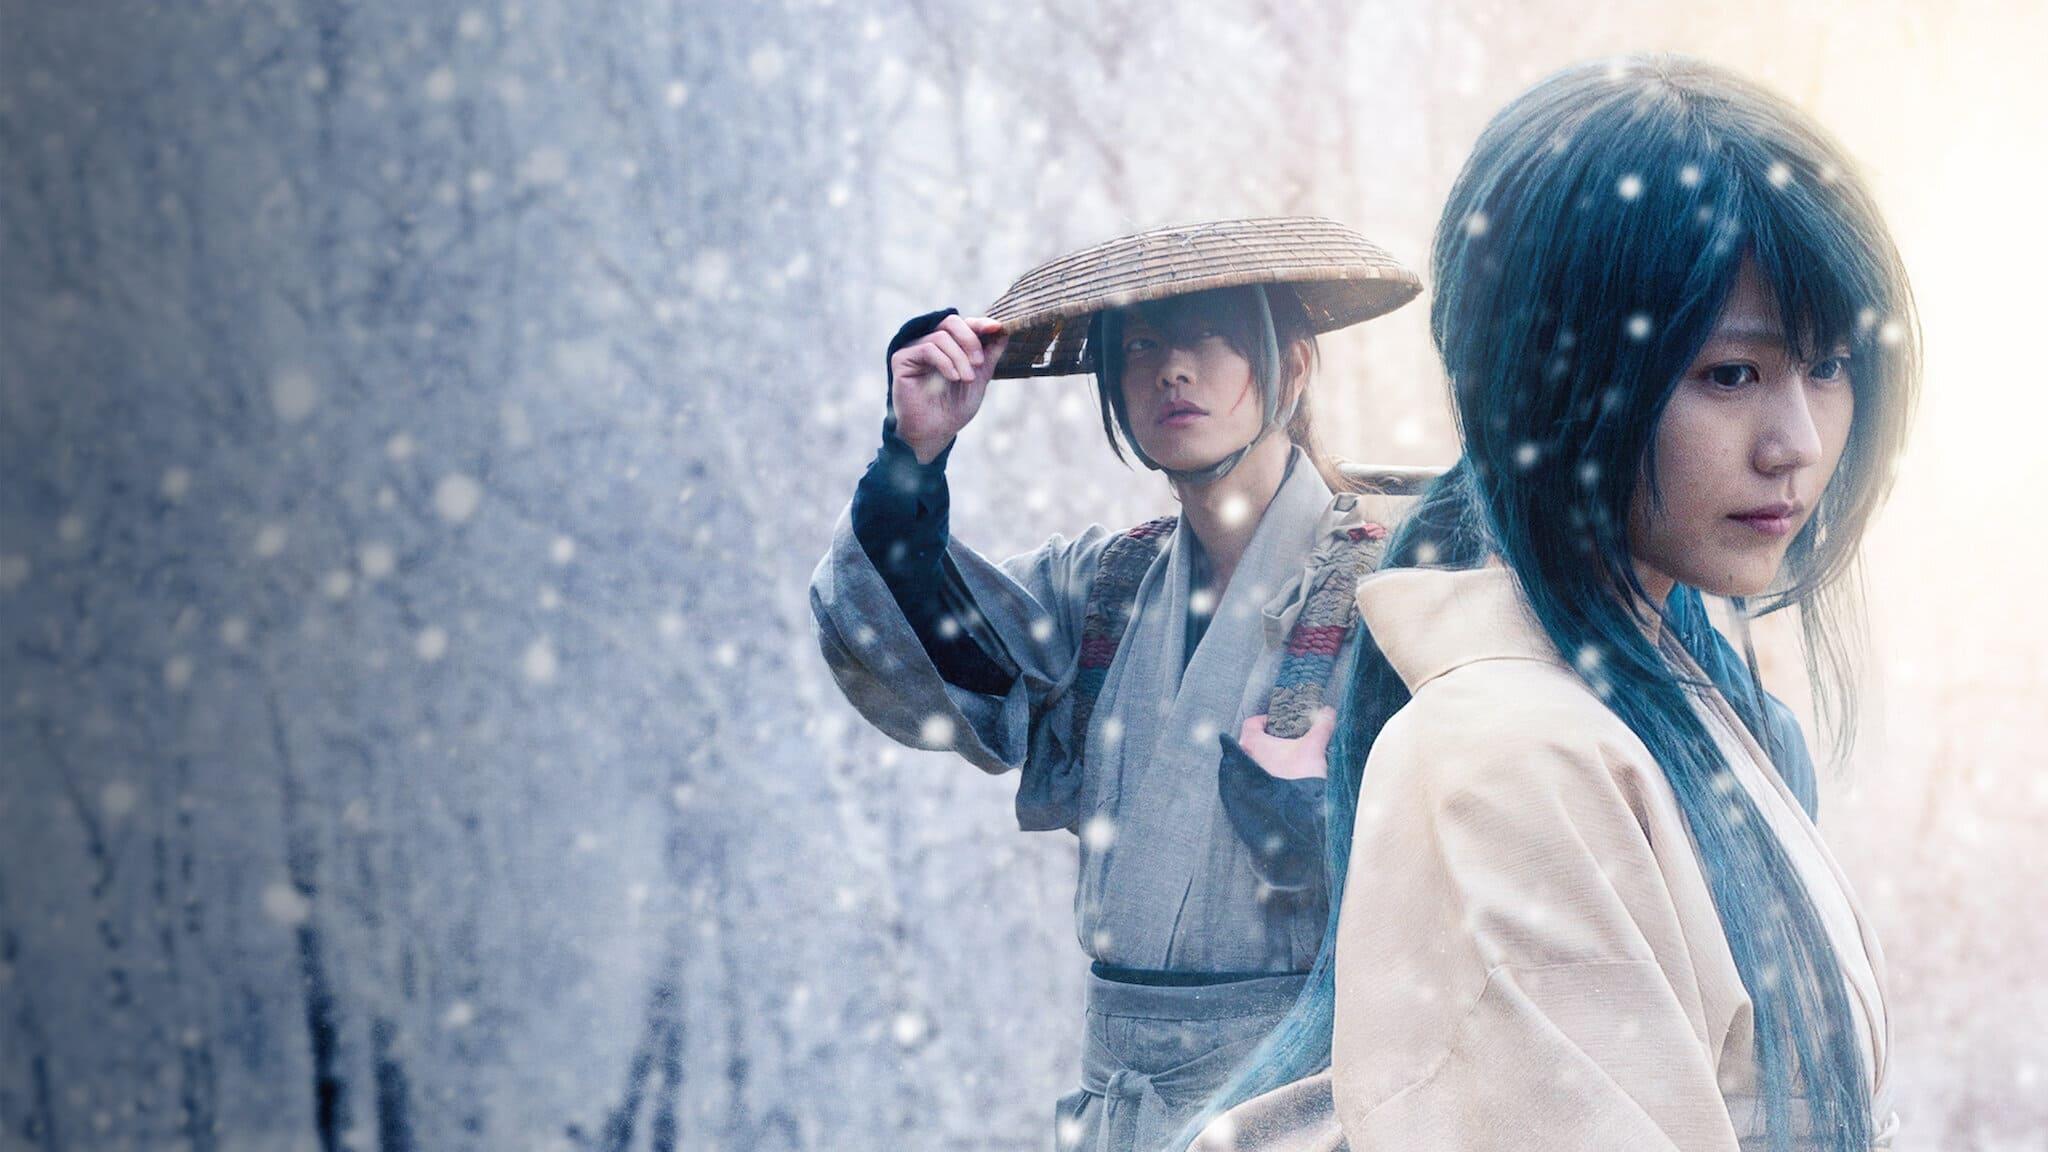 Rurouni Kenshin: The Beginning backdrop